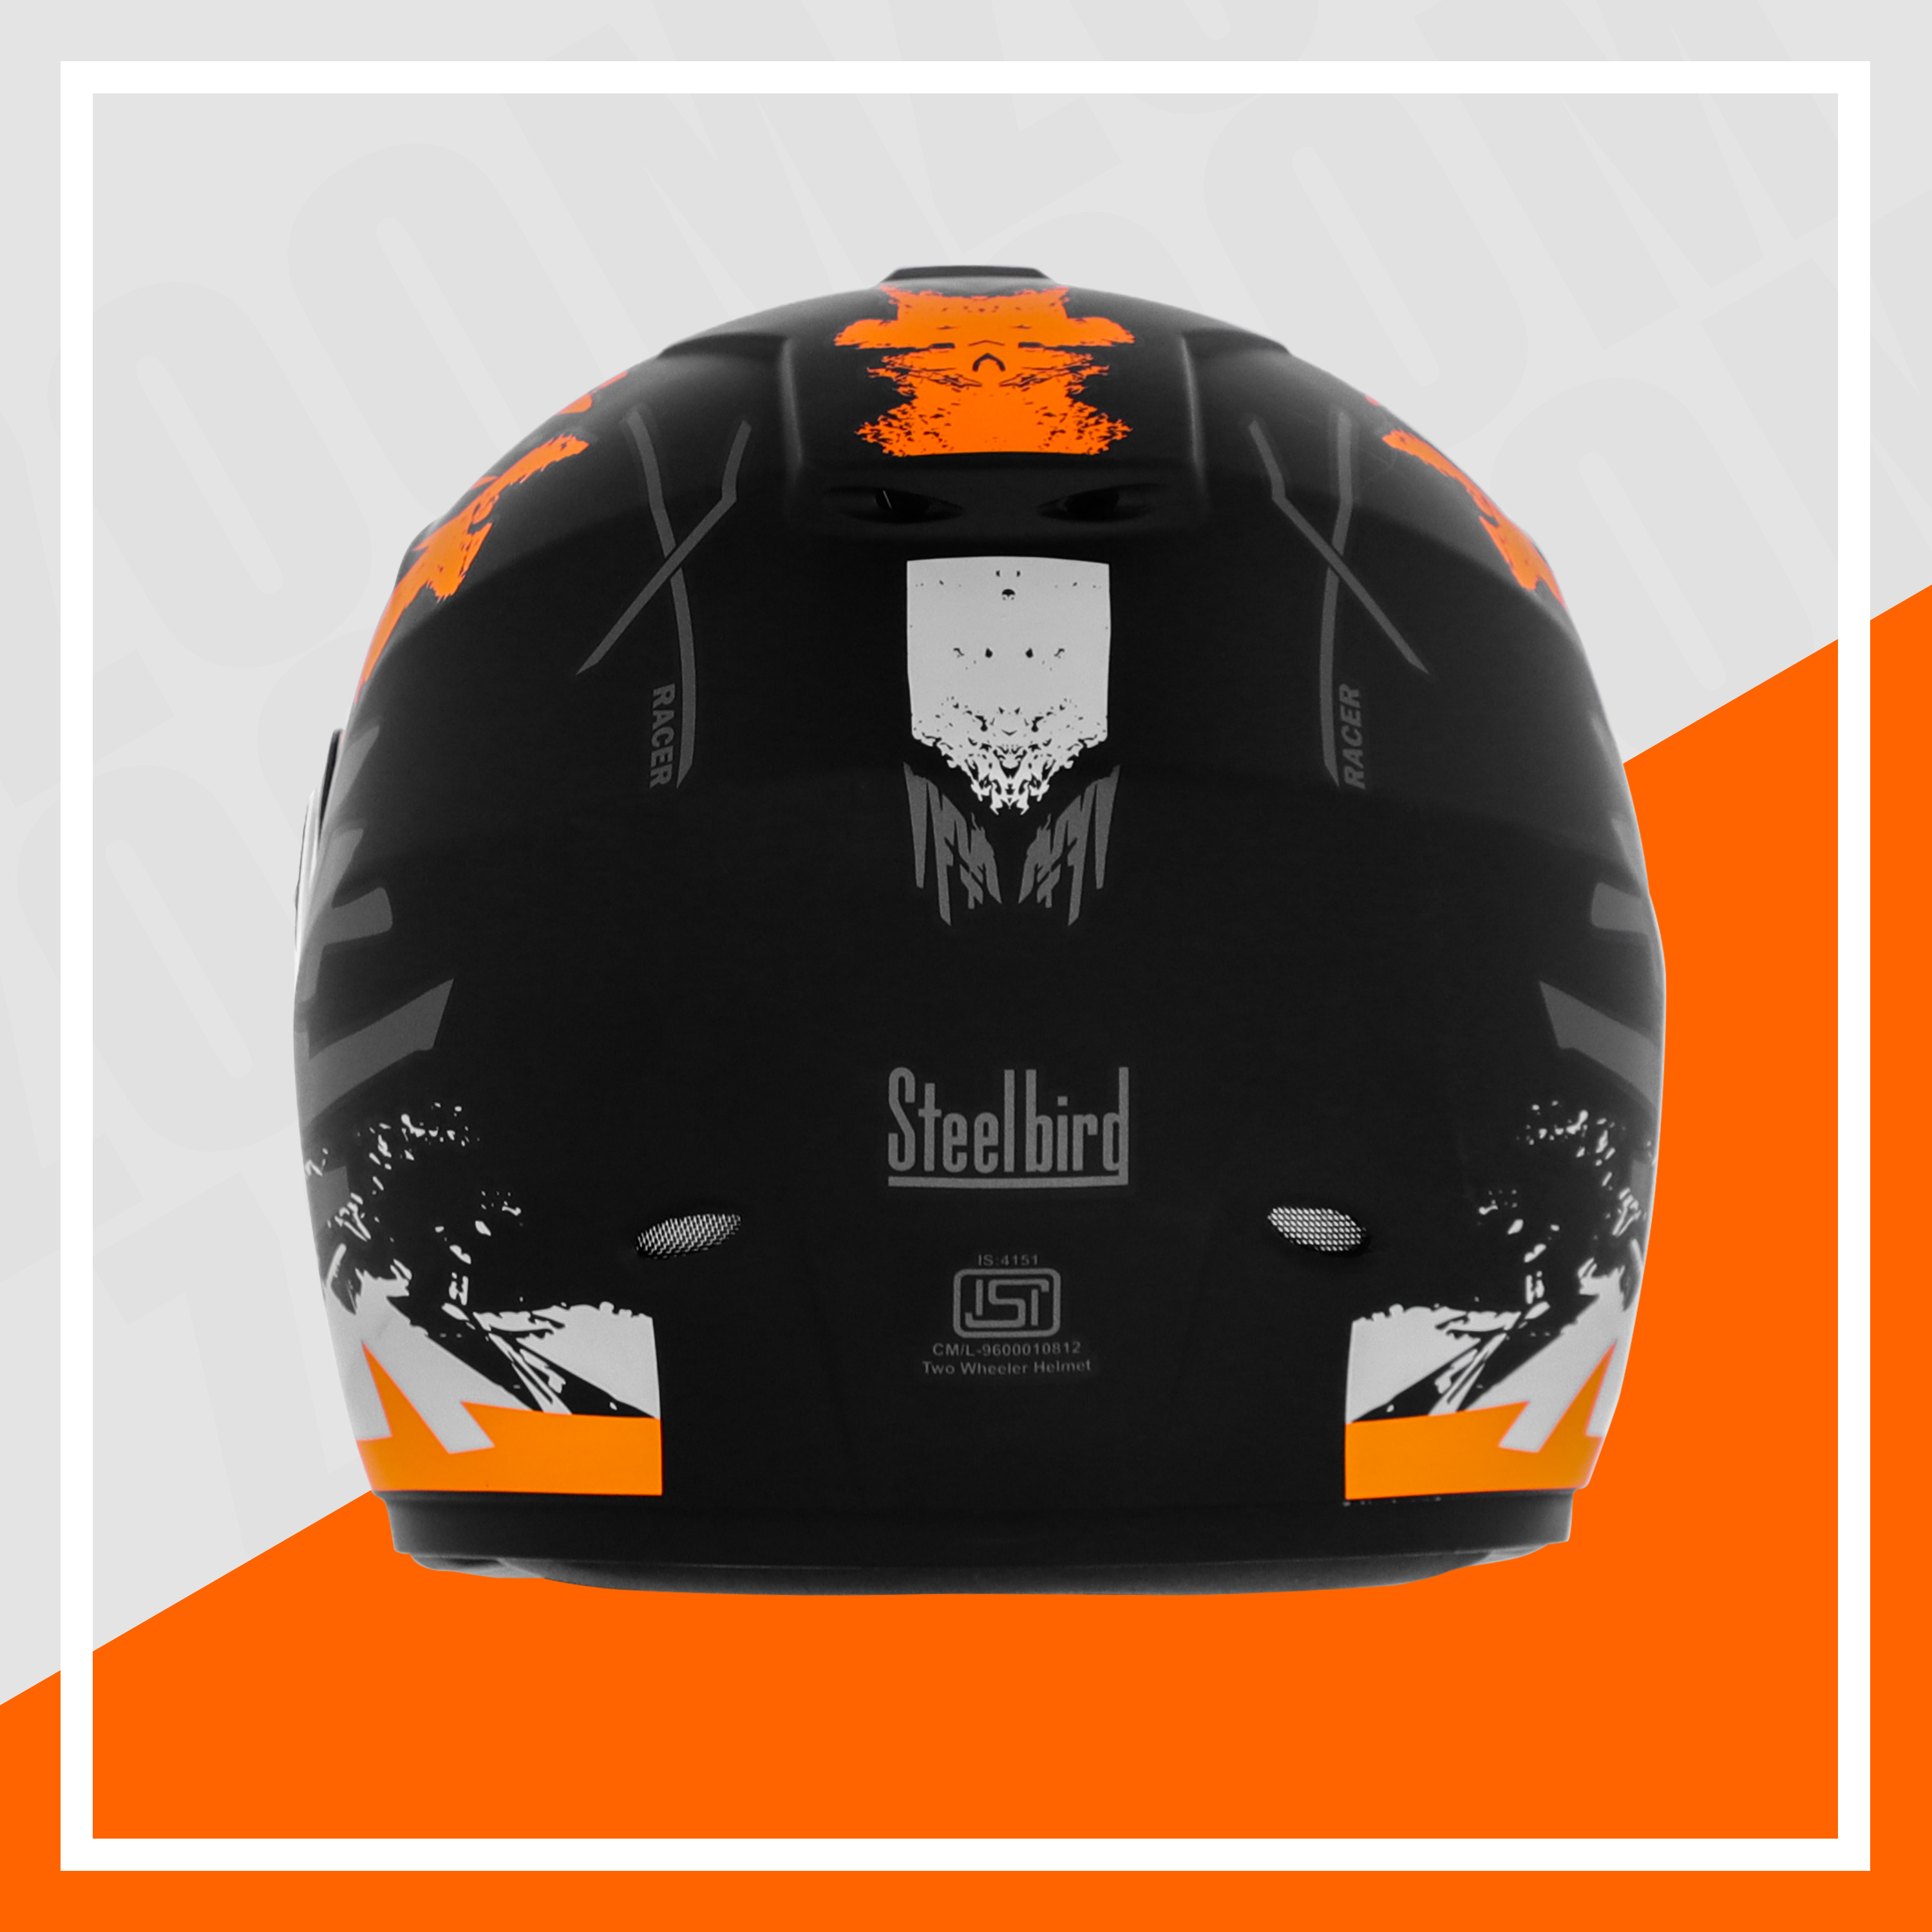 Steelbird SBH-11 Zoom Racer ISI Certified Full Face Graphic Helmet For Men And Women (Matt Black Orange With Chrome Rainbow Visor)